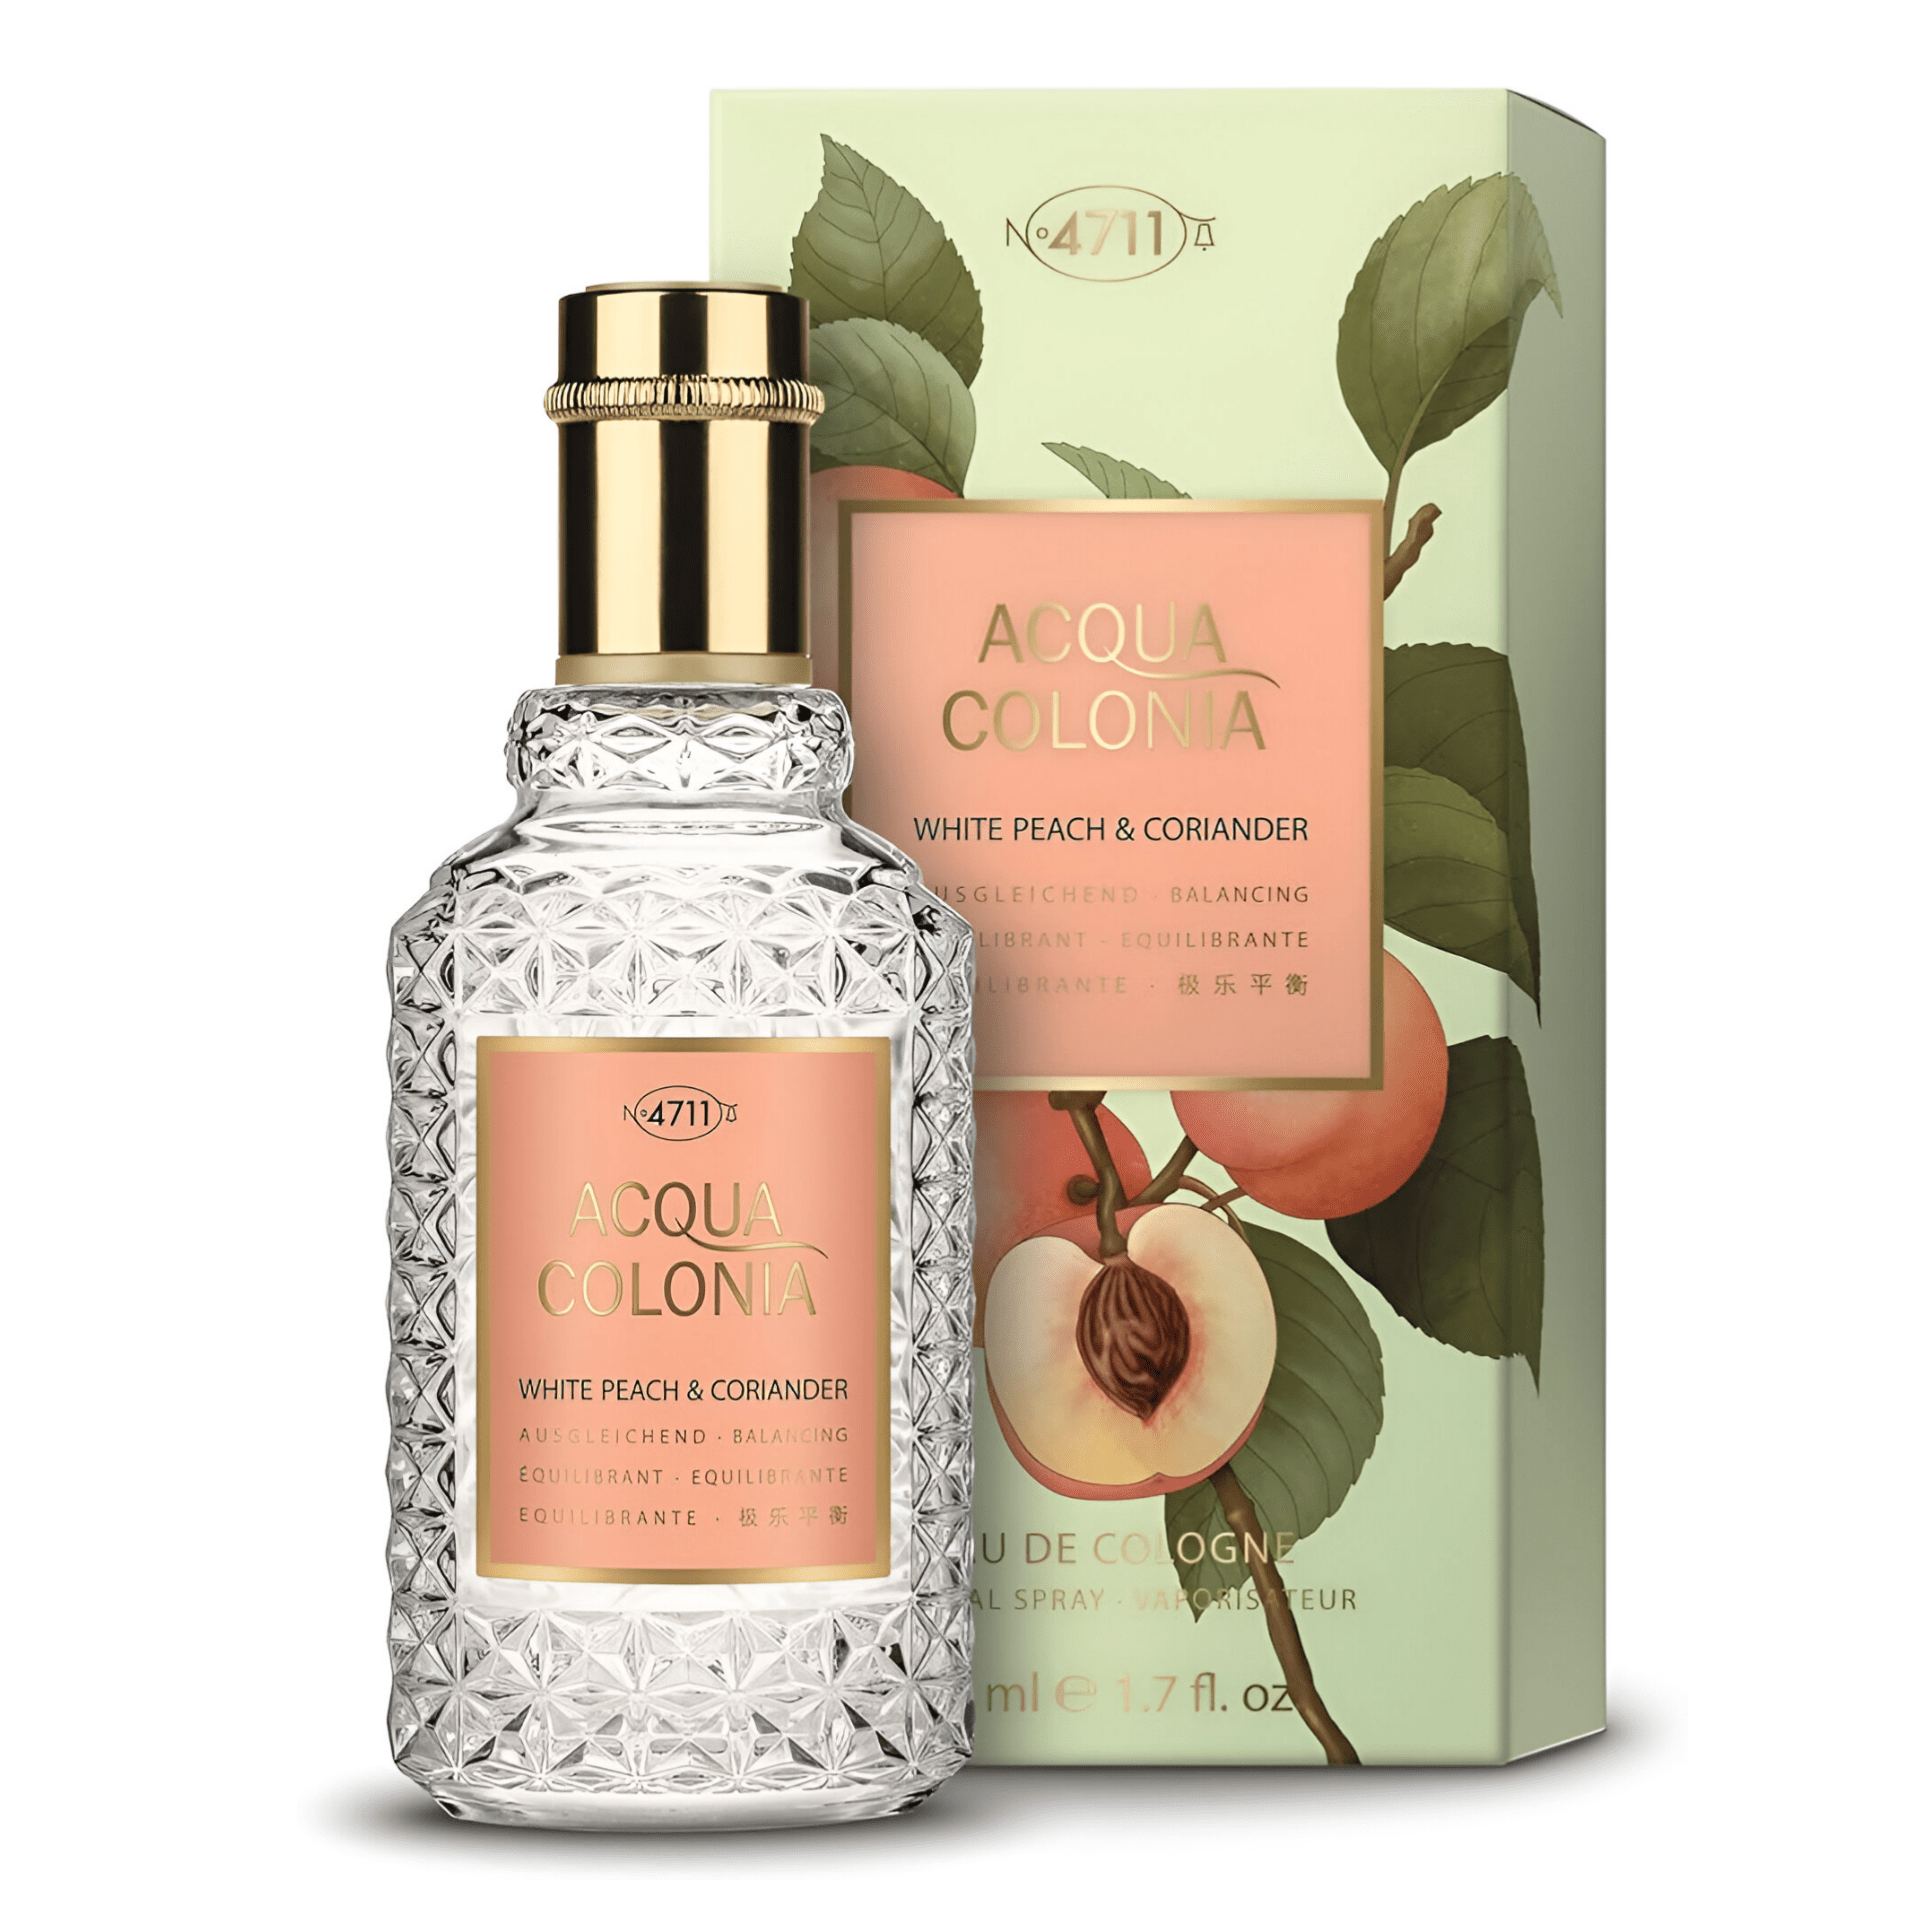 No. 4711 Acqua Colonia White Peach & Coriander Cologne | My Perfume Shop Australia